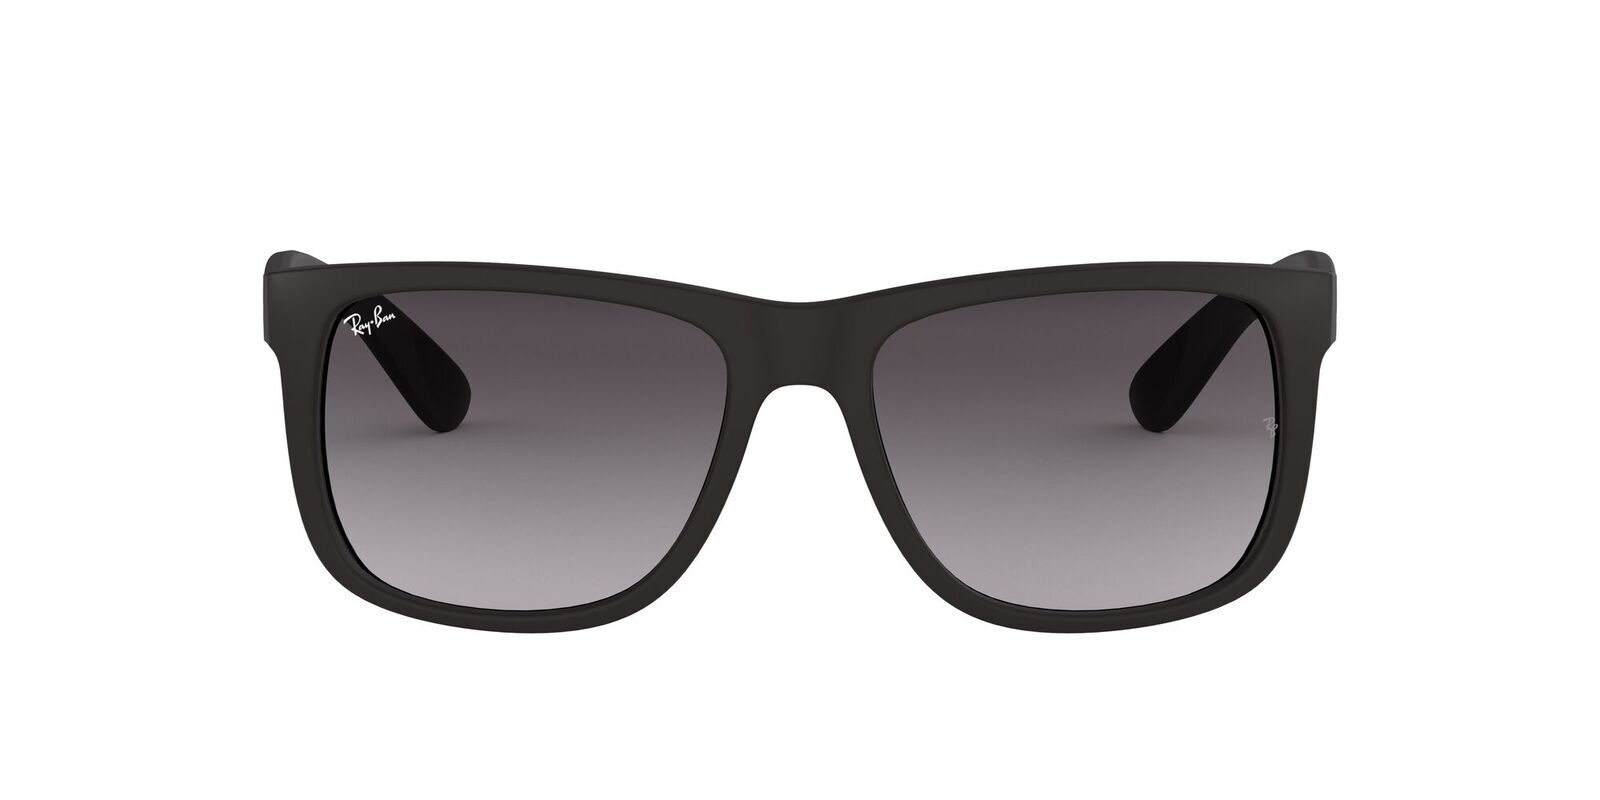 ray ban justin sunglasses review